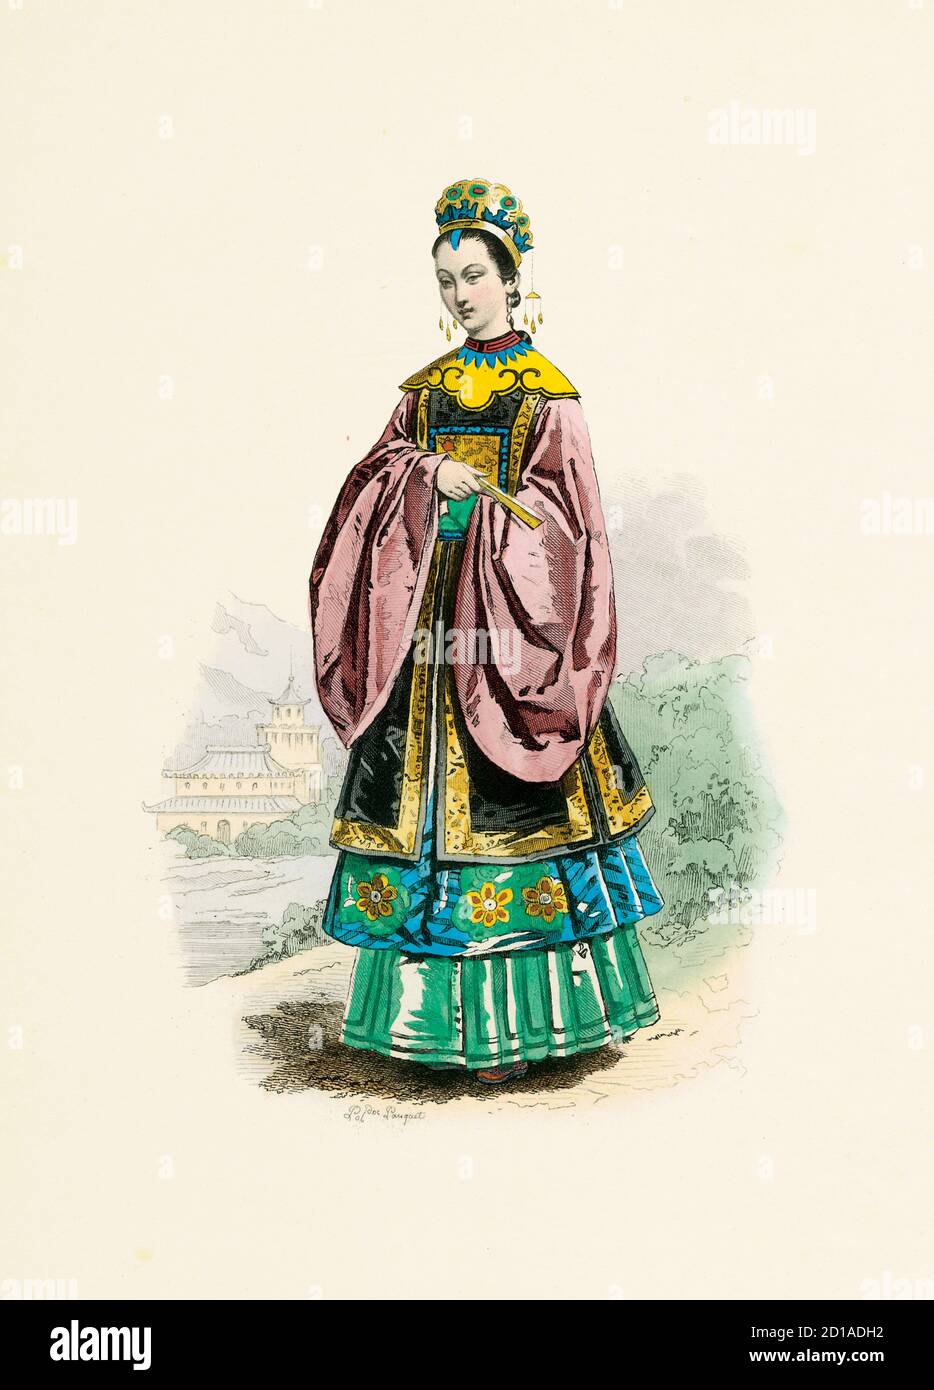 Porträt der Frau einer chinesischen Mandarine 1780, handkolorierter Stich von H. Pauquet. Veröffentlicht im Buch Modes et Costumes Historiques Dessines Stockfoto